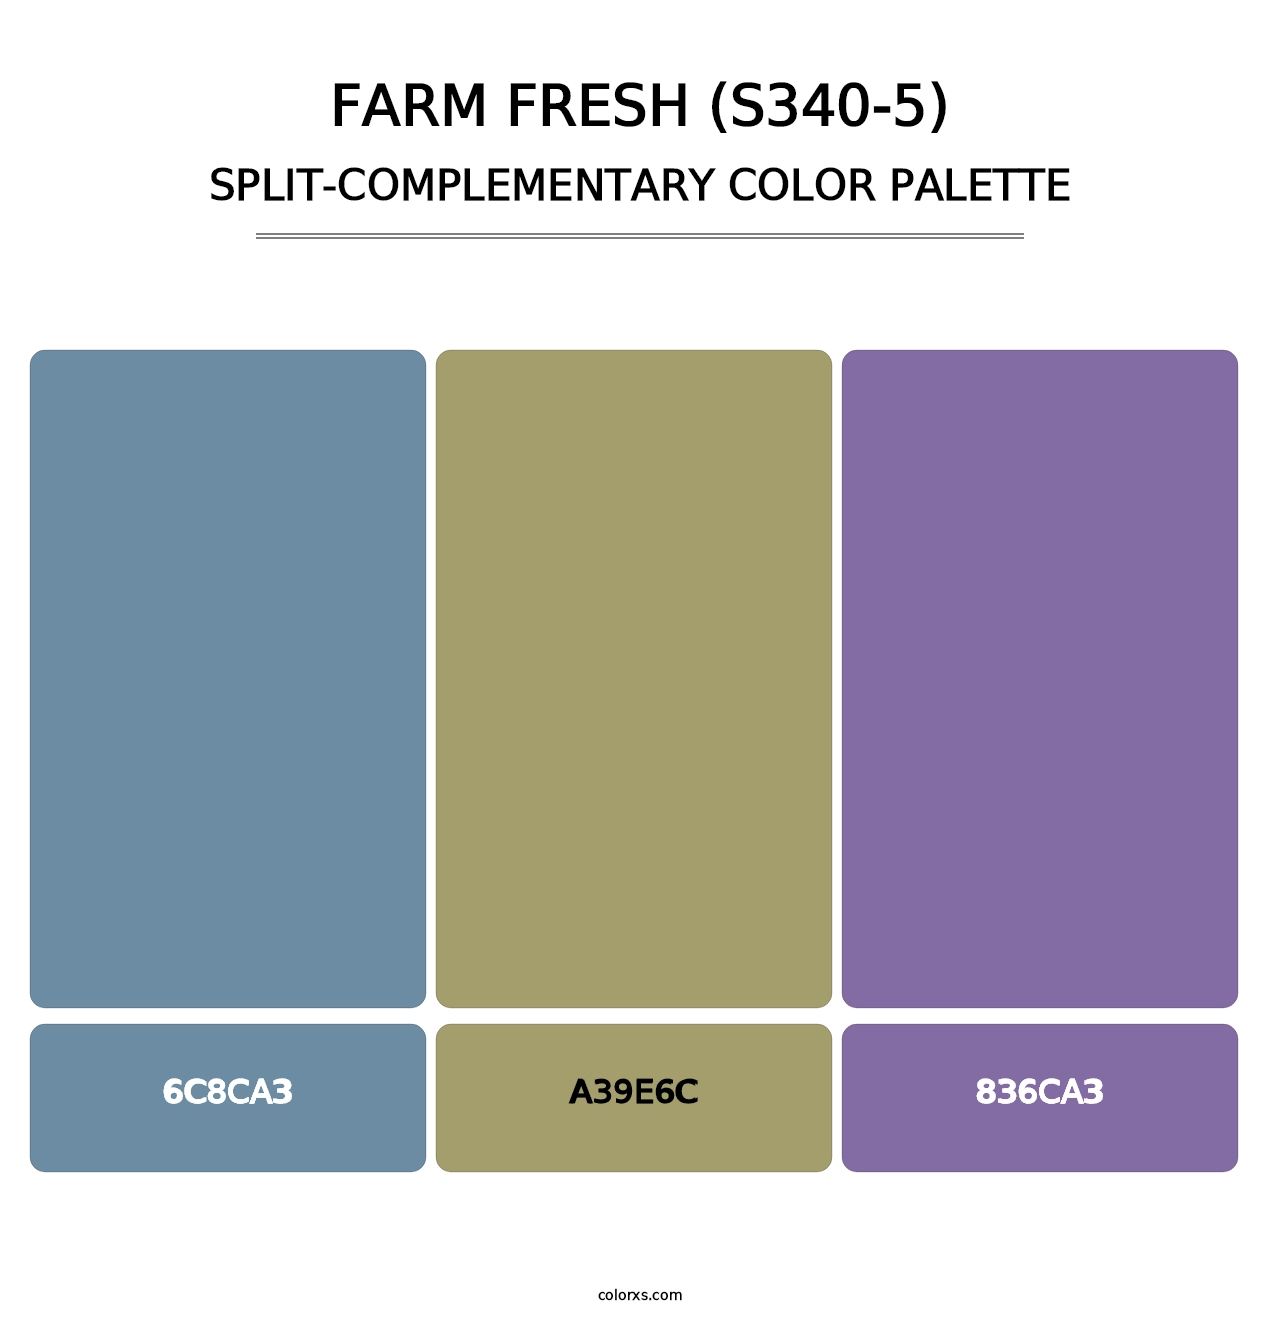 Farm Fresh (S340-5) - Split-Complementary Color Palette